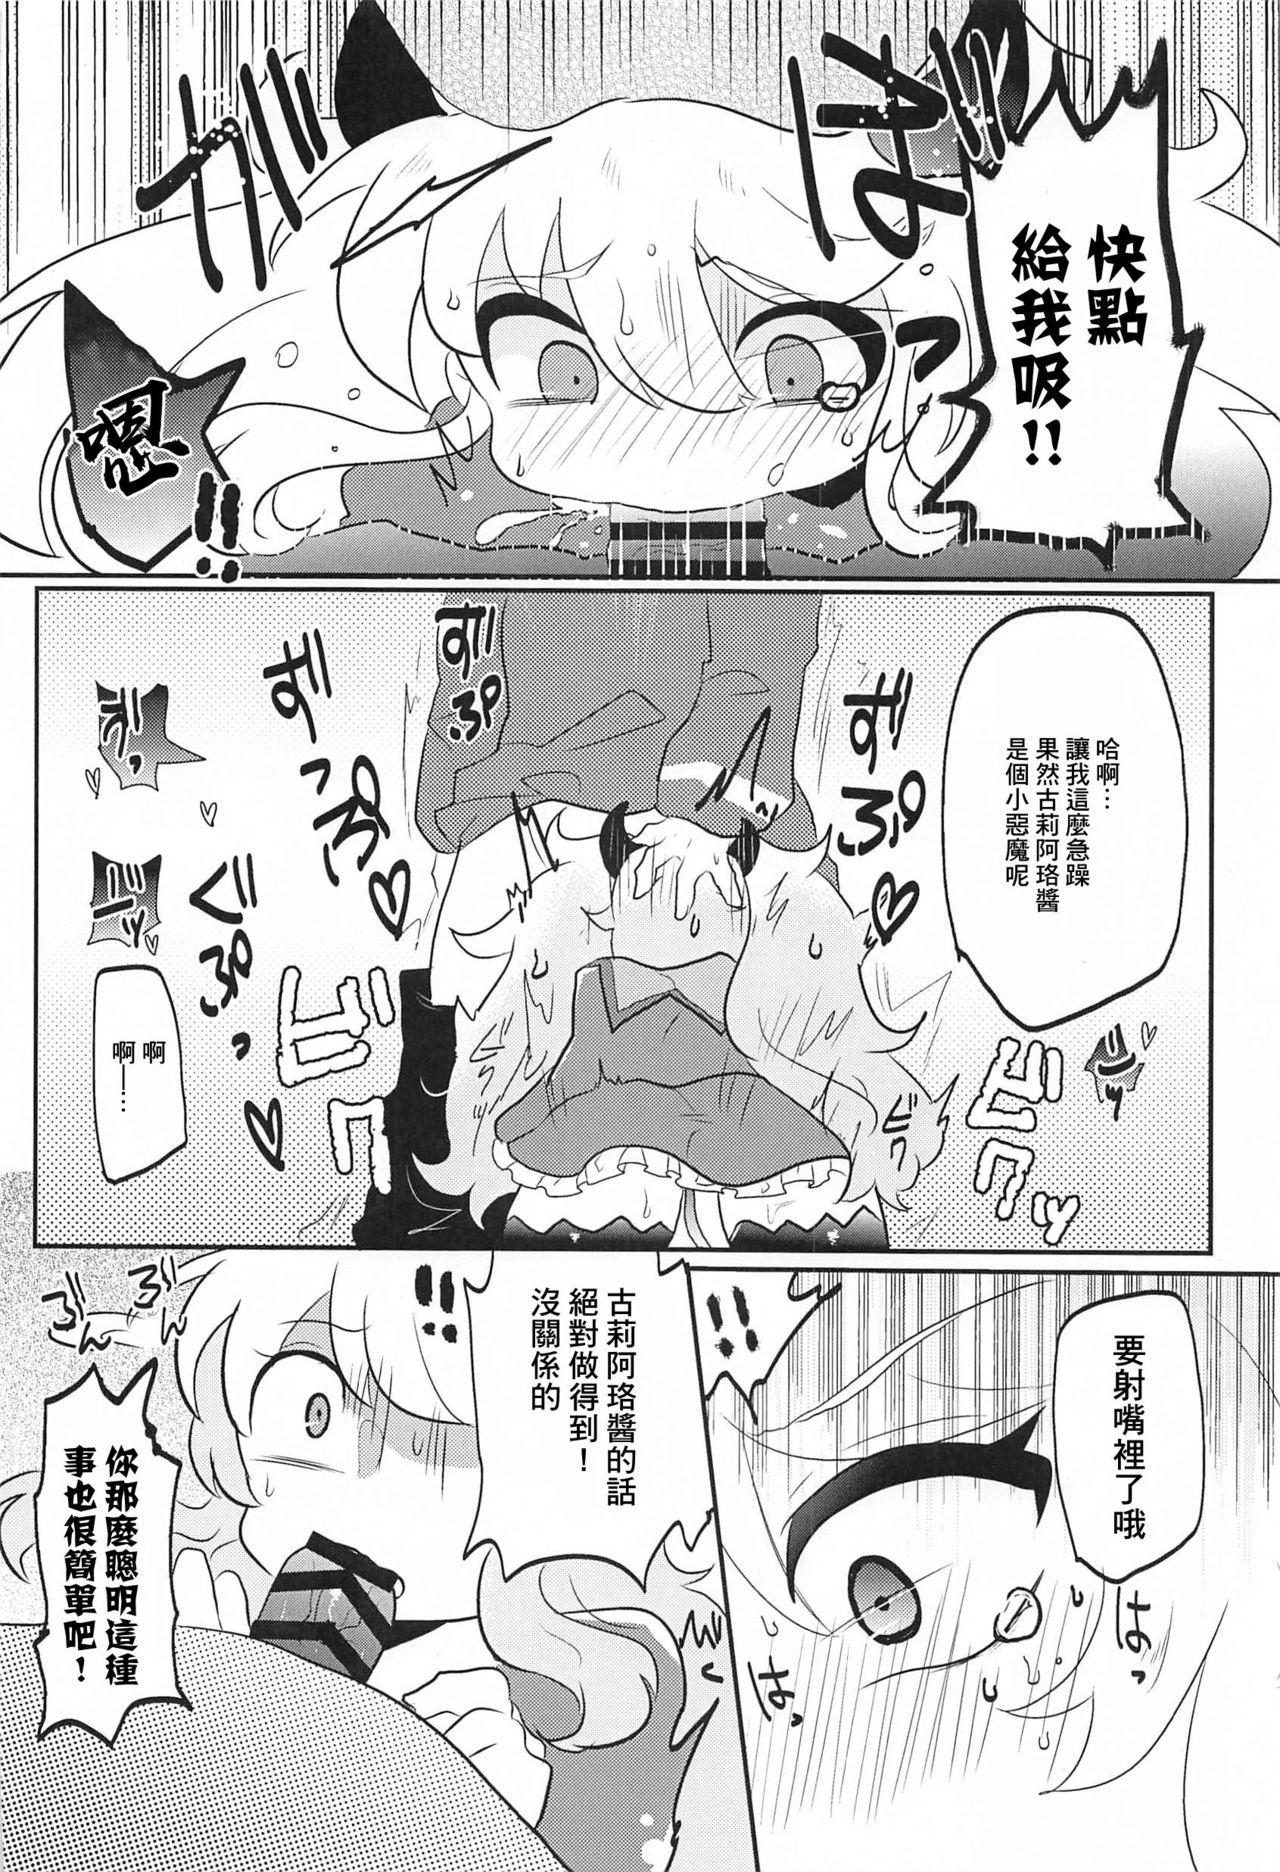 Nut Blocker no Sugosa o Wakarasete Agemasu - Bomber girl Classroom - Page 6